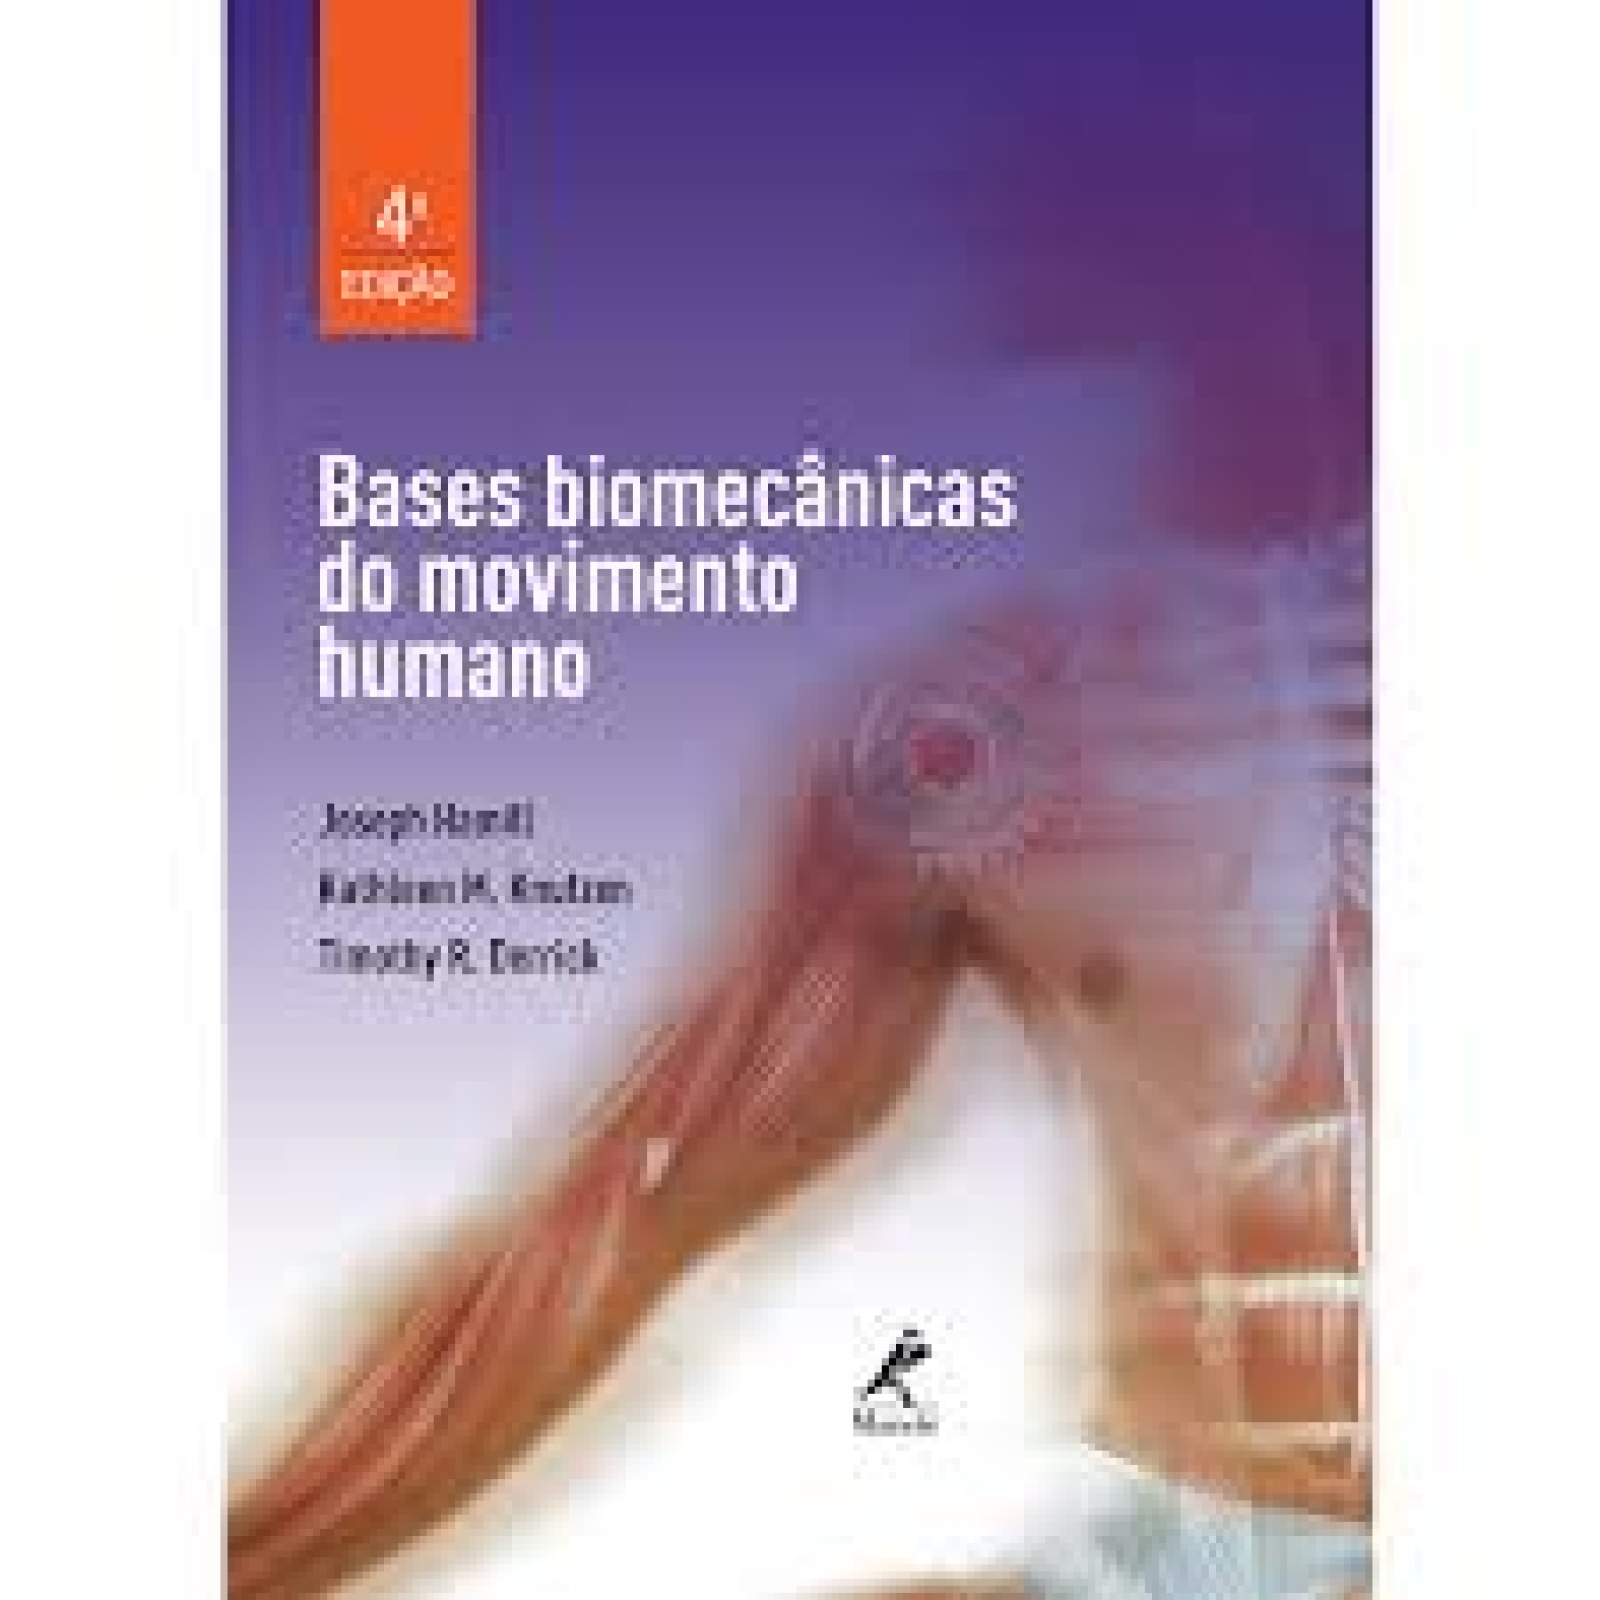 Bases Biomecânicas Do Movimento Humano - 4ª Edição